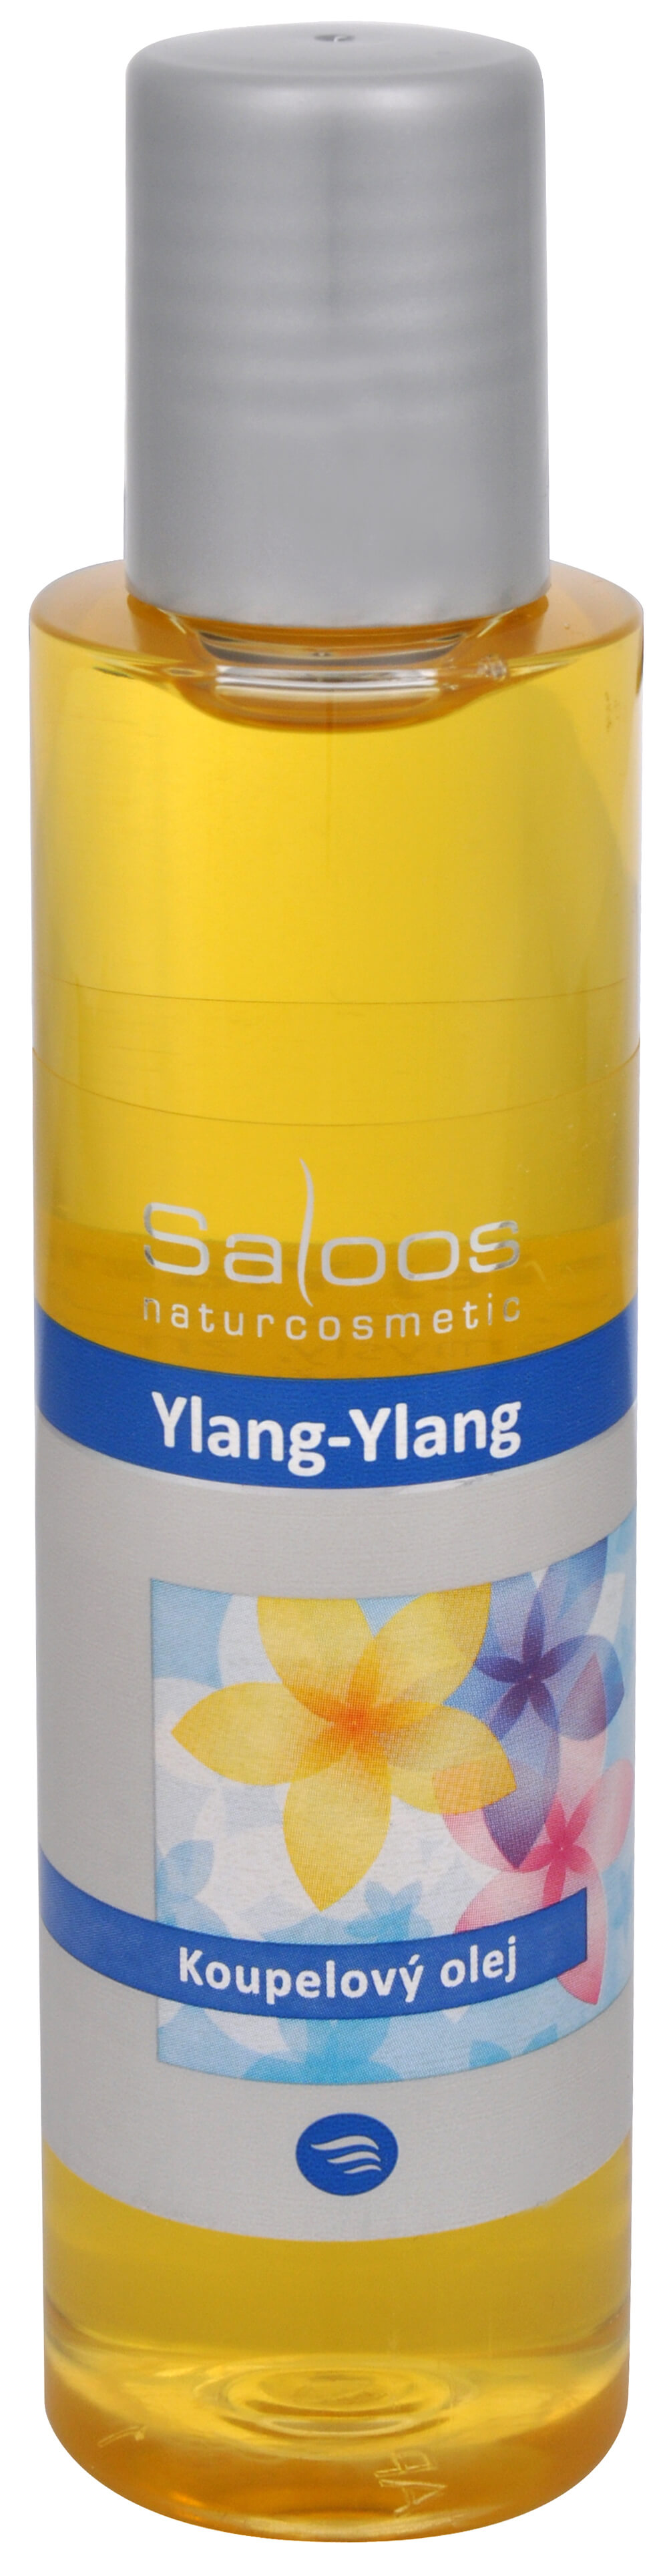 Zobrazit detail výrobku Saloos Koupelový olej - Ylang-Ylang 125 ml